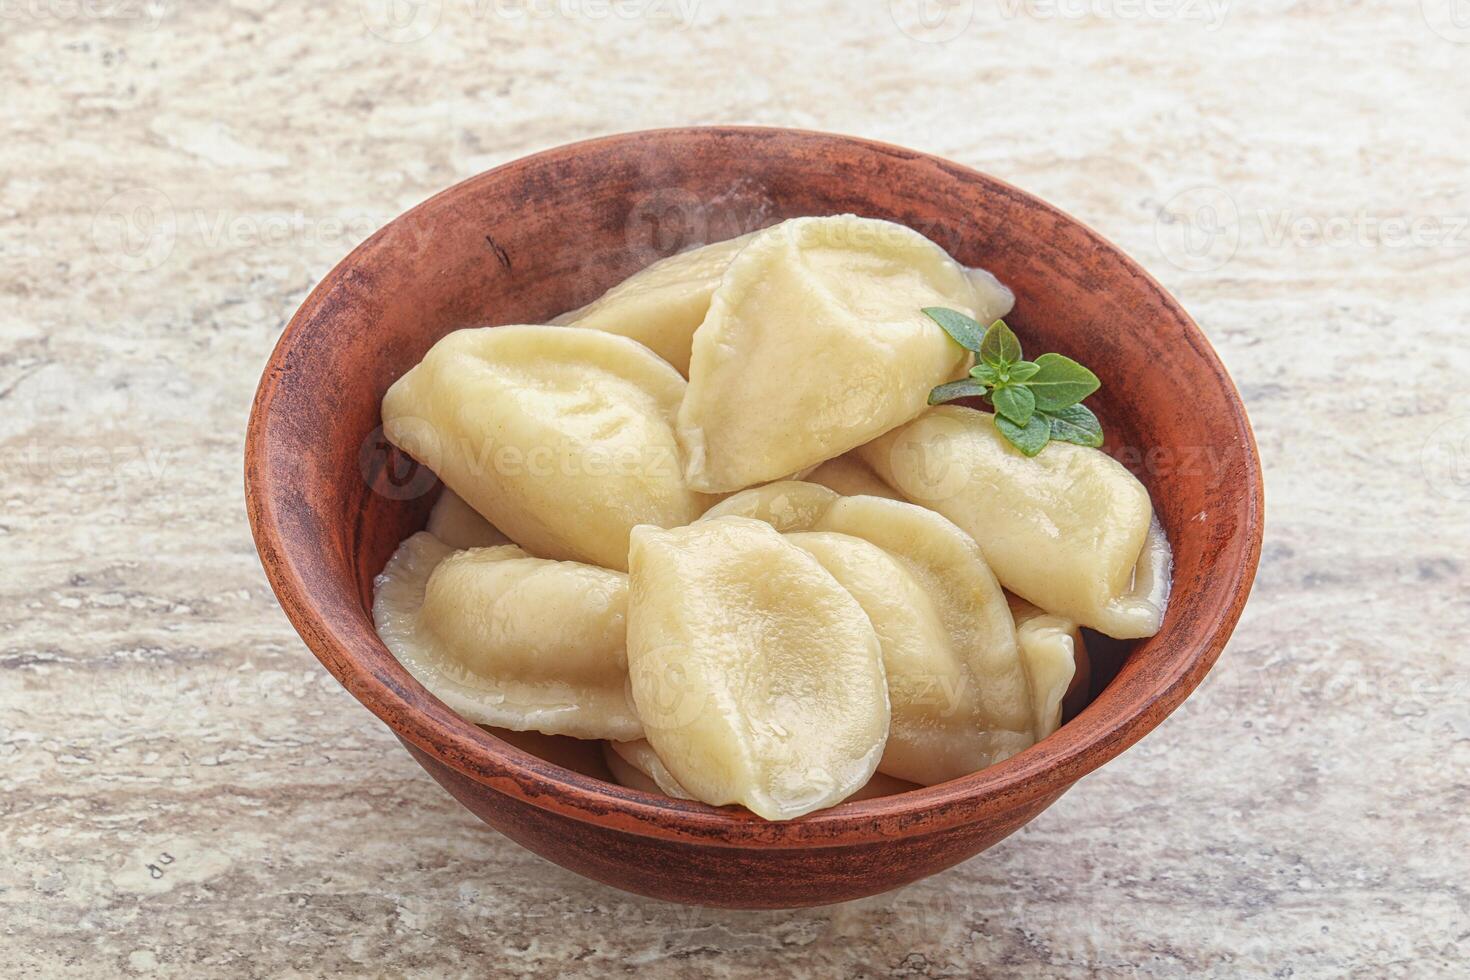 Russische traditionele vareniki - dumplings met aardappel foto